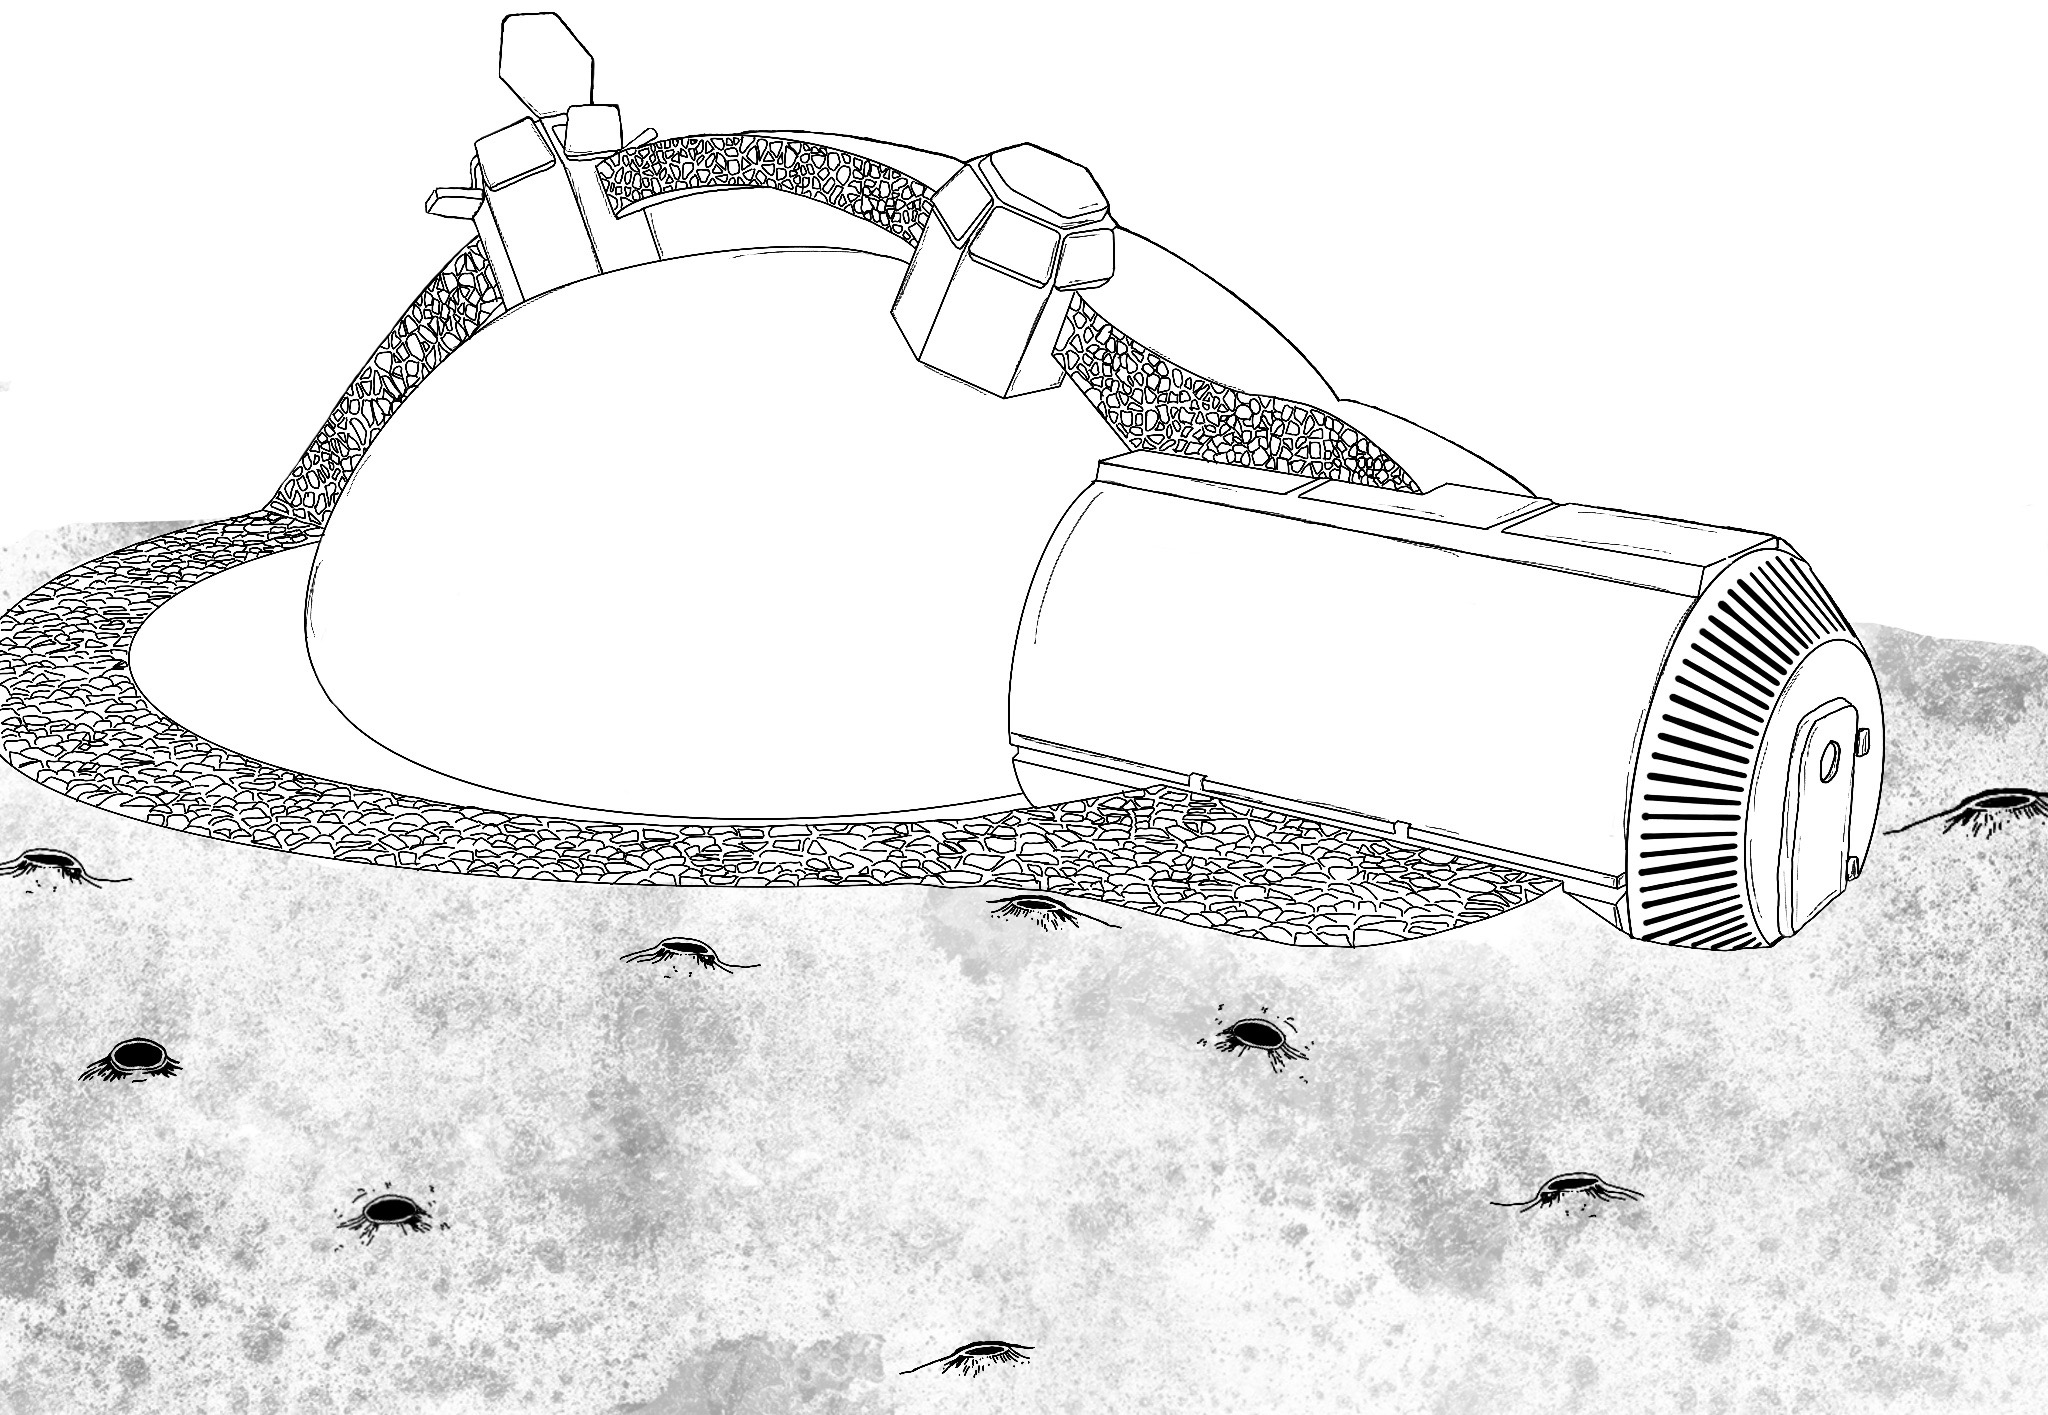 Une base lunaire, constituée de modules sphériques, répondant aux exigences spatiales